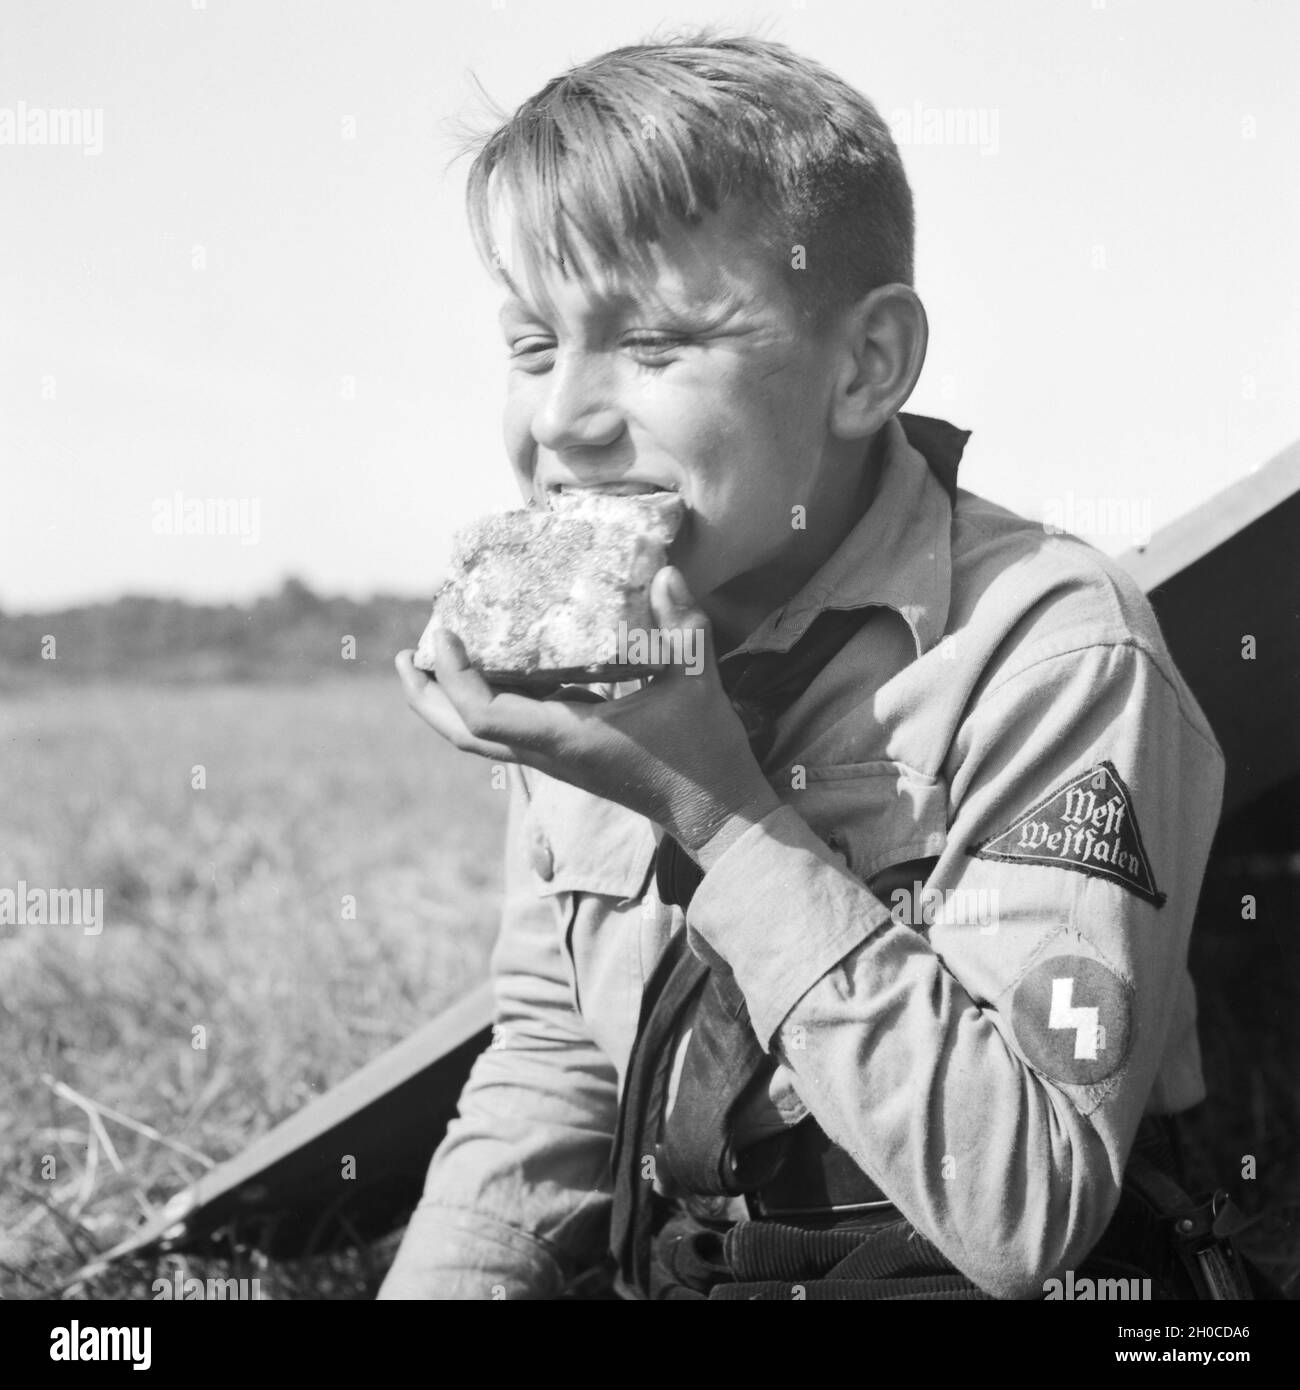 Hitlerjunge im Zeltlager beim Essen, Deutschland 1930er Jahre. Hitler youth having lunch, Germany 1930s. Stock Photo